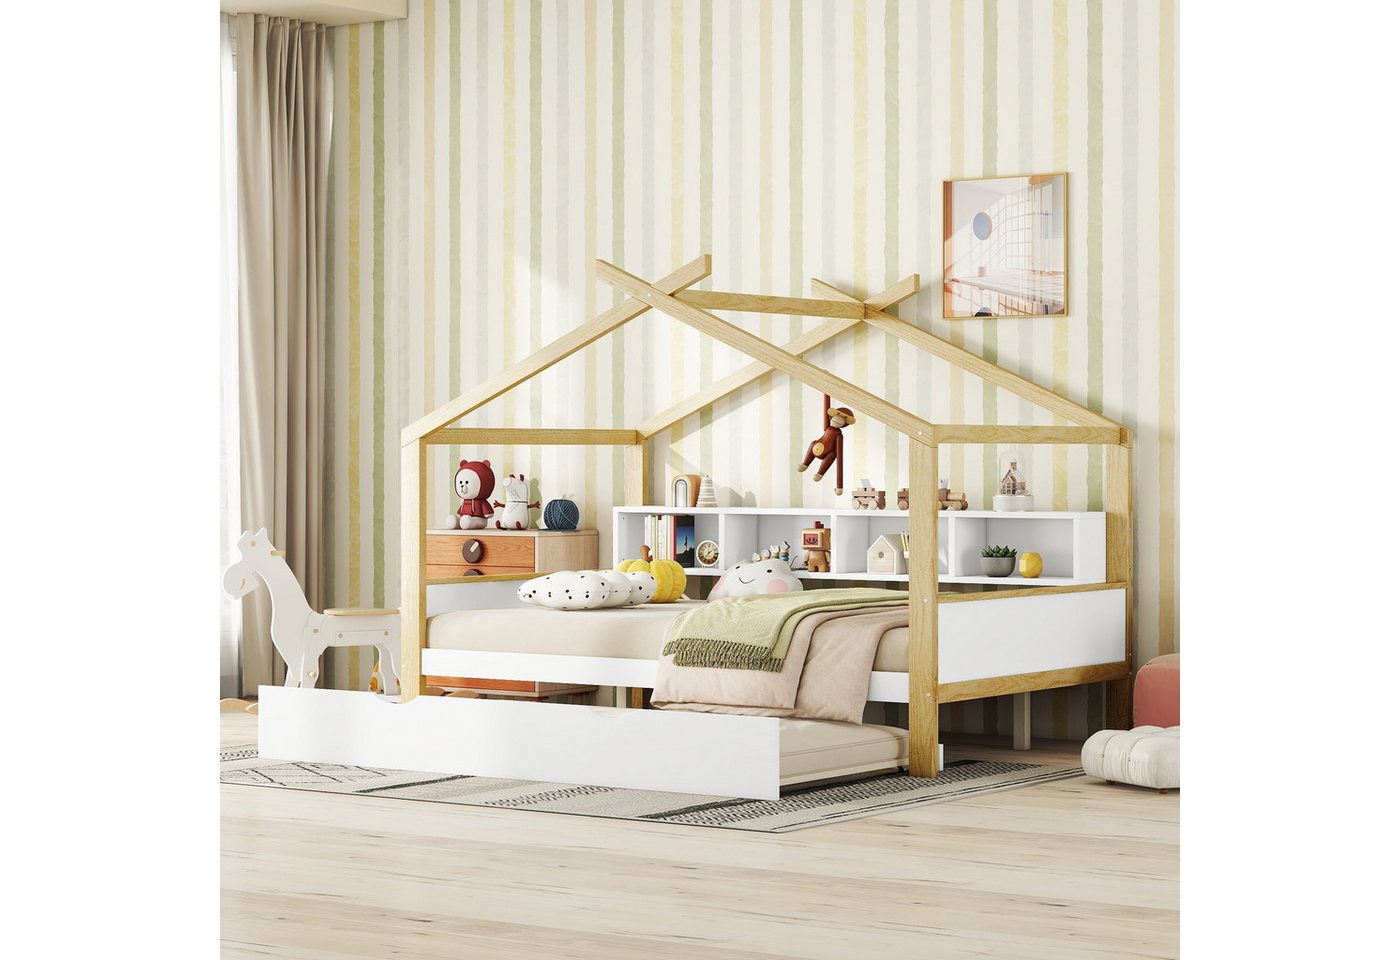 Flieks Kinderbett, Holzbett Hausbett 140x200cm mit Ausziehbett 90x180cm und Staufächer von Flieks